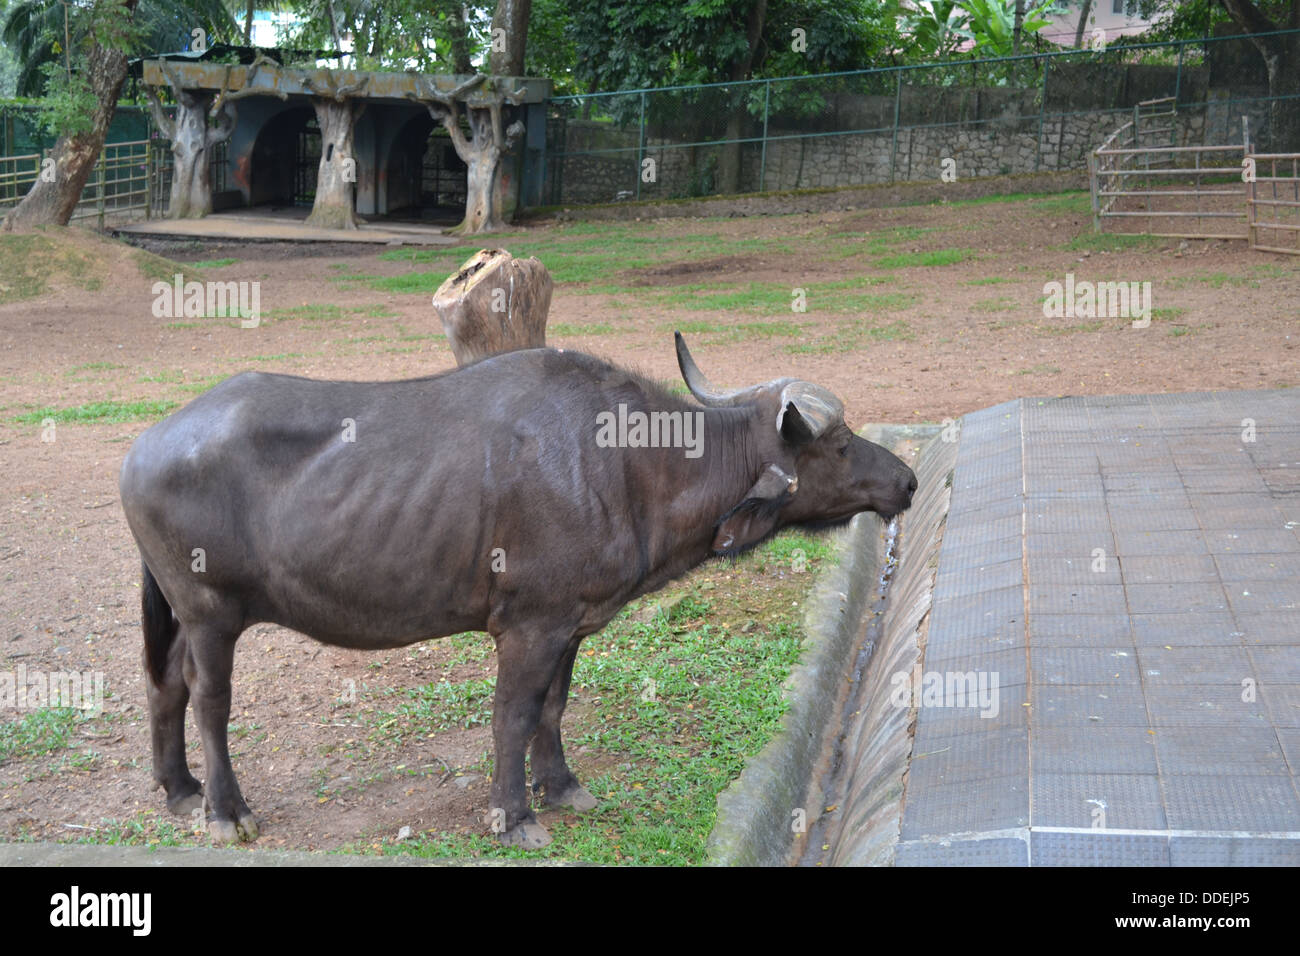 African buffalo animal zoo Stock Photo -